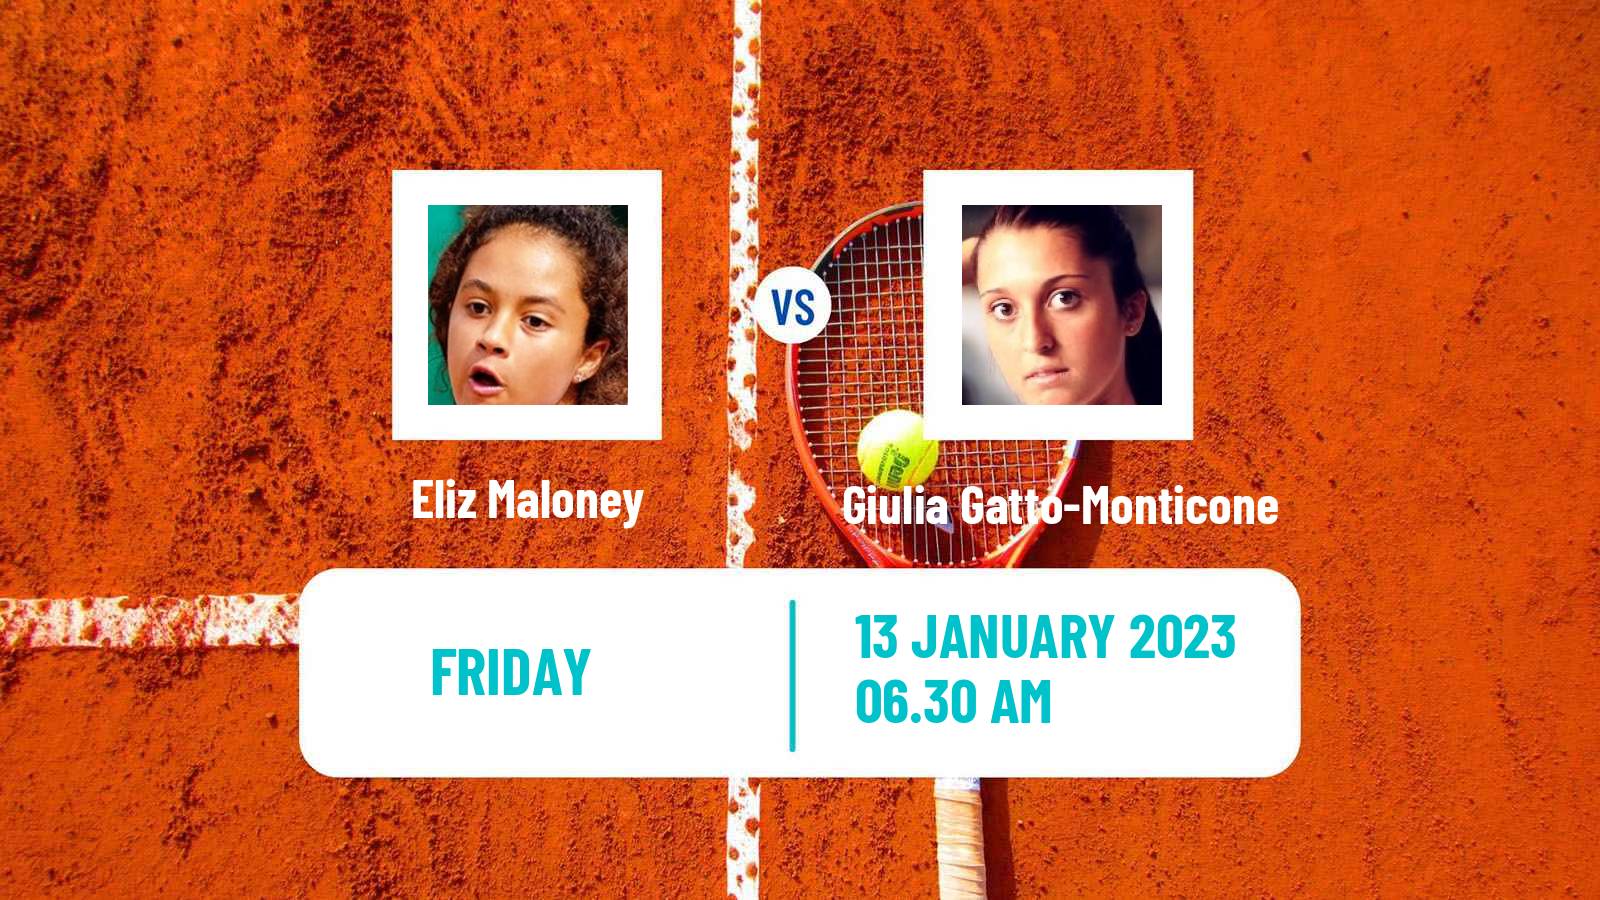 Tennis ITF Tournaments Eliz Maloney - Giulia Gatto-Monticone